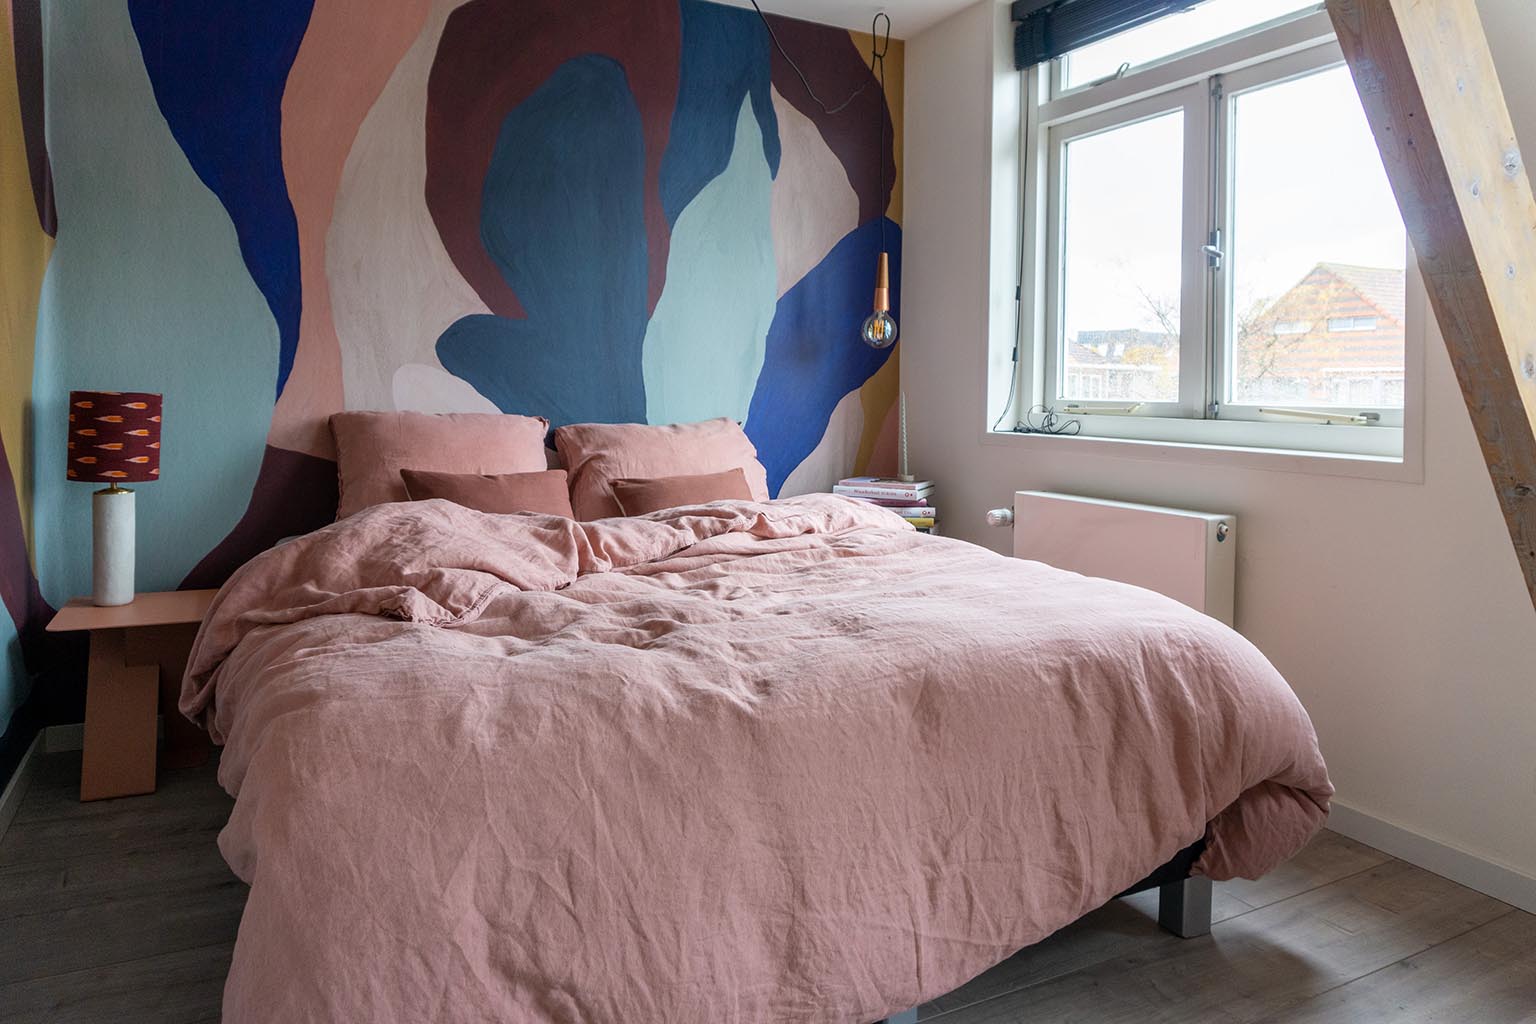 Gewaagd behang in slaapkamer uitkiezen | Stek Magazine 